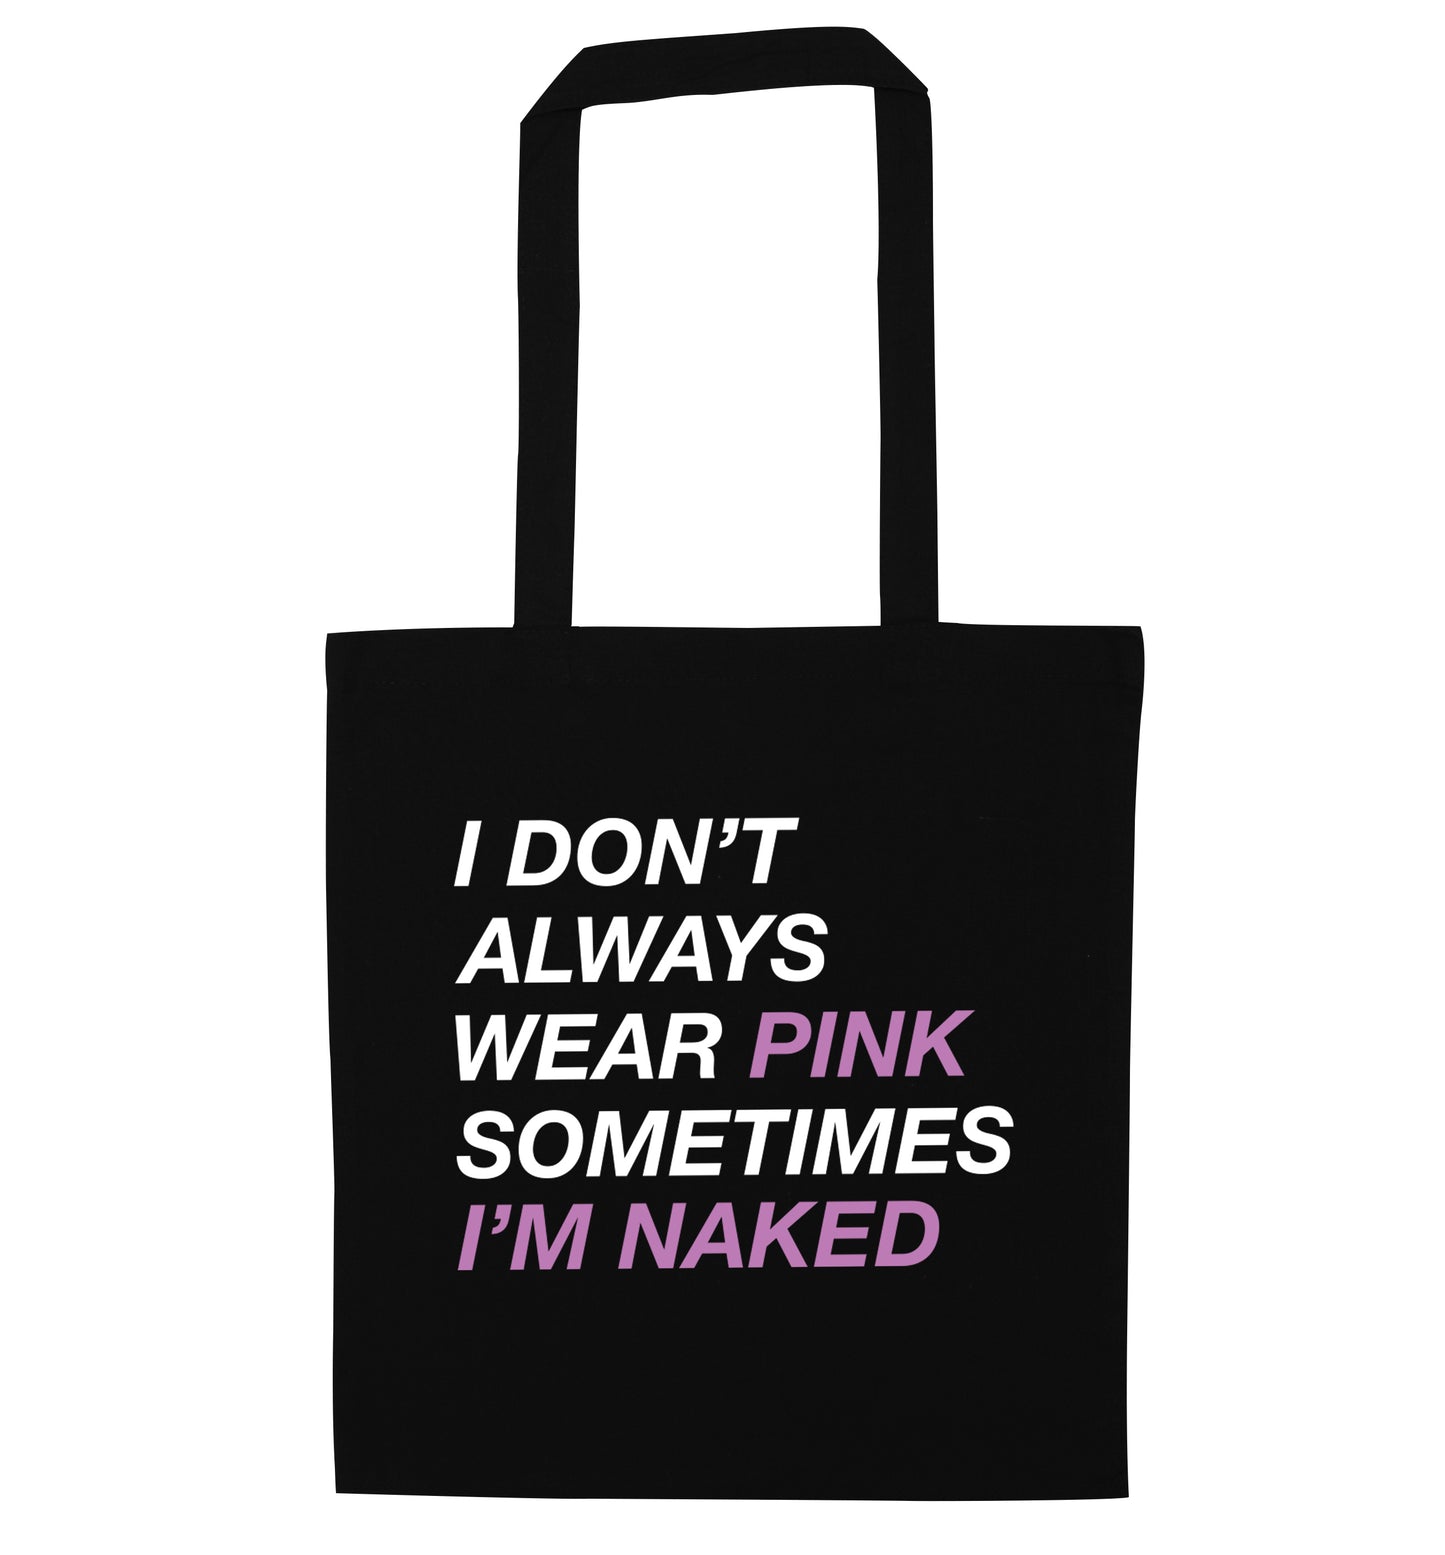 I don't always wear pink sometimes I'm naked black tote bag